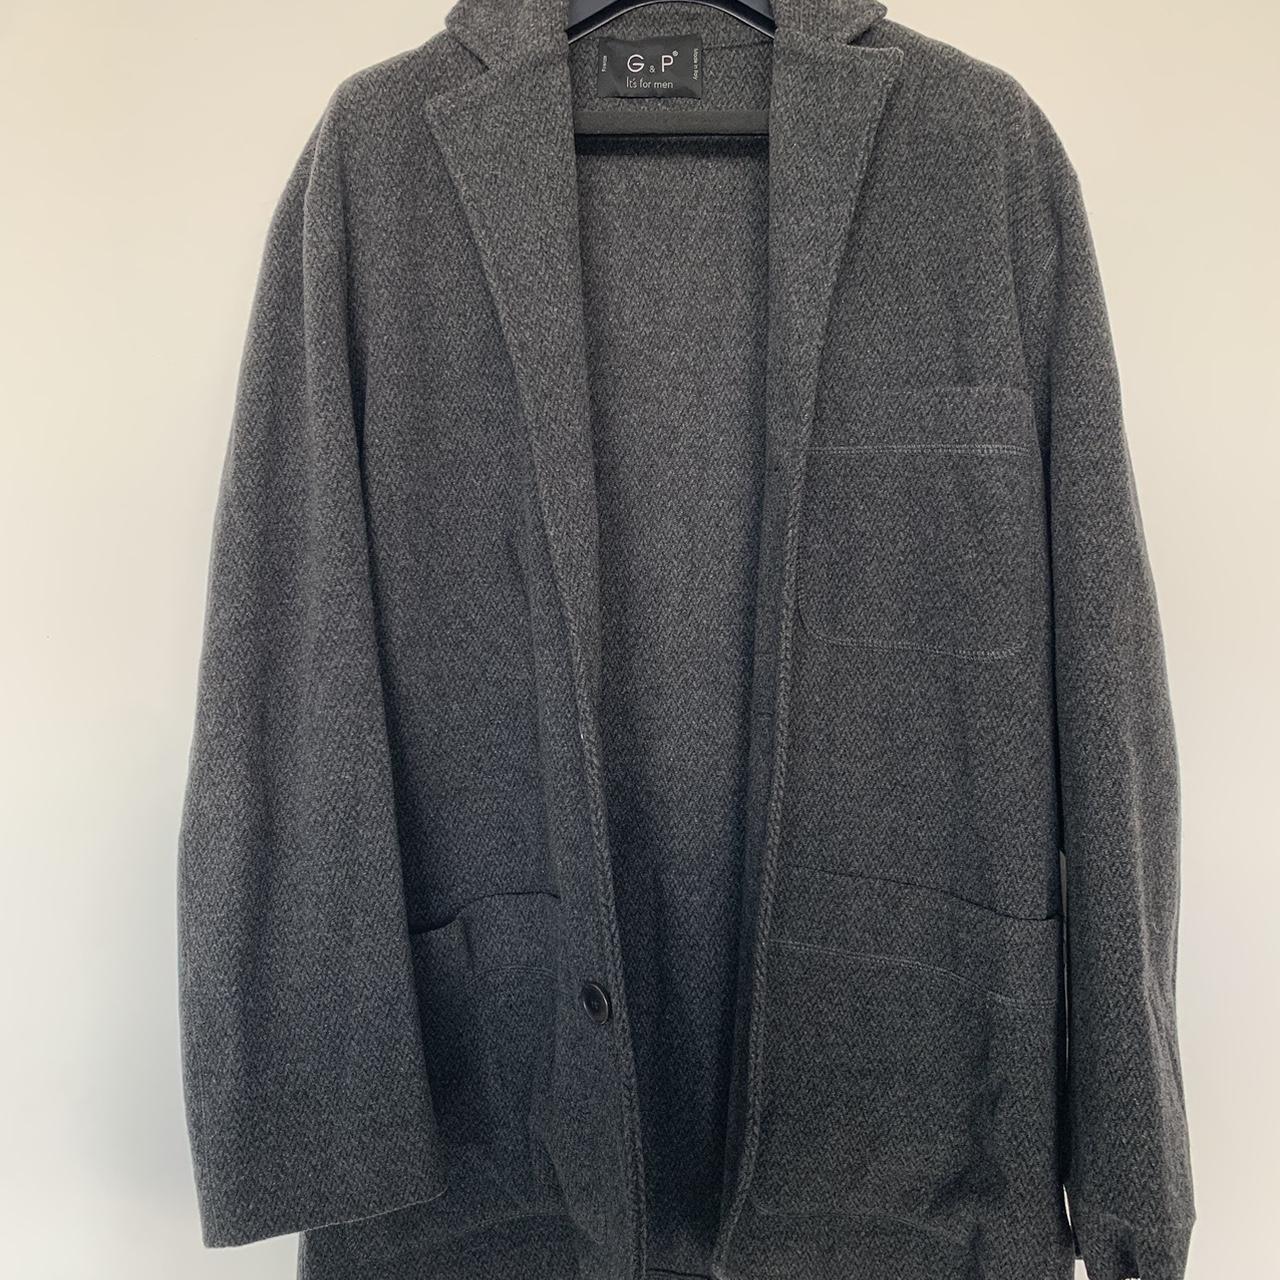 Vintage G&P wool overcoat made in Italy... - Depop